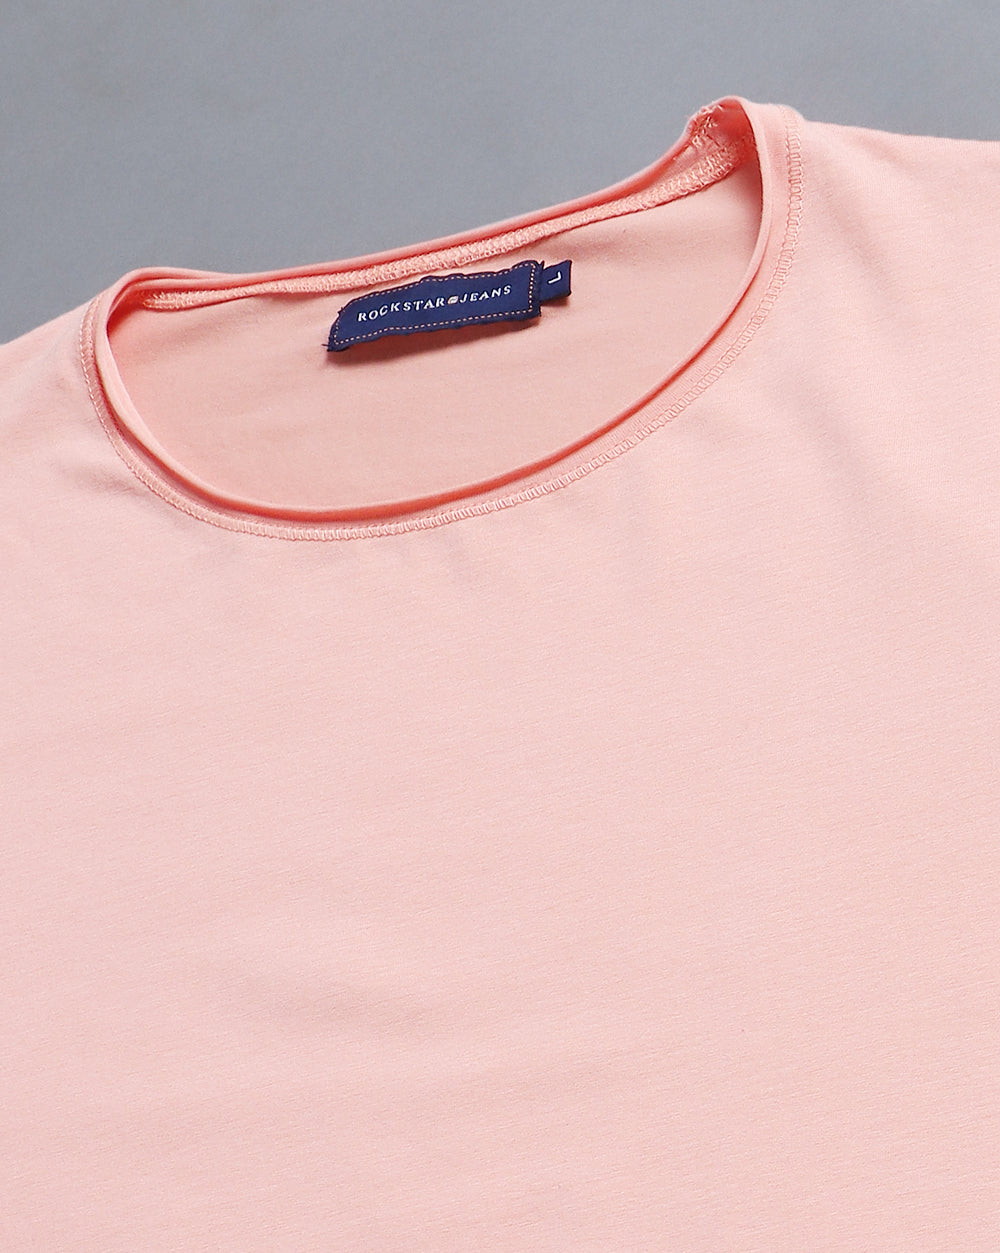 Crewneck Comfort Strech T-Shirt-Light Pink